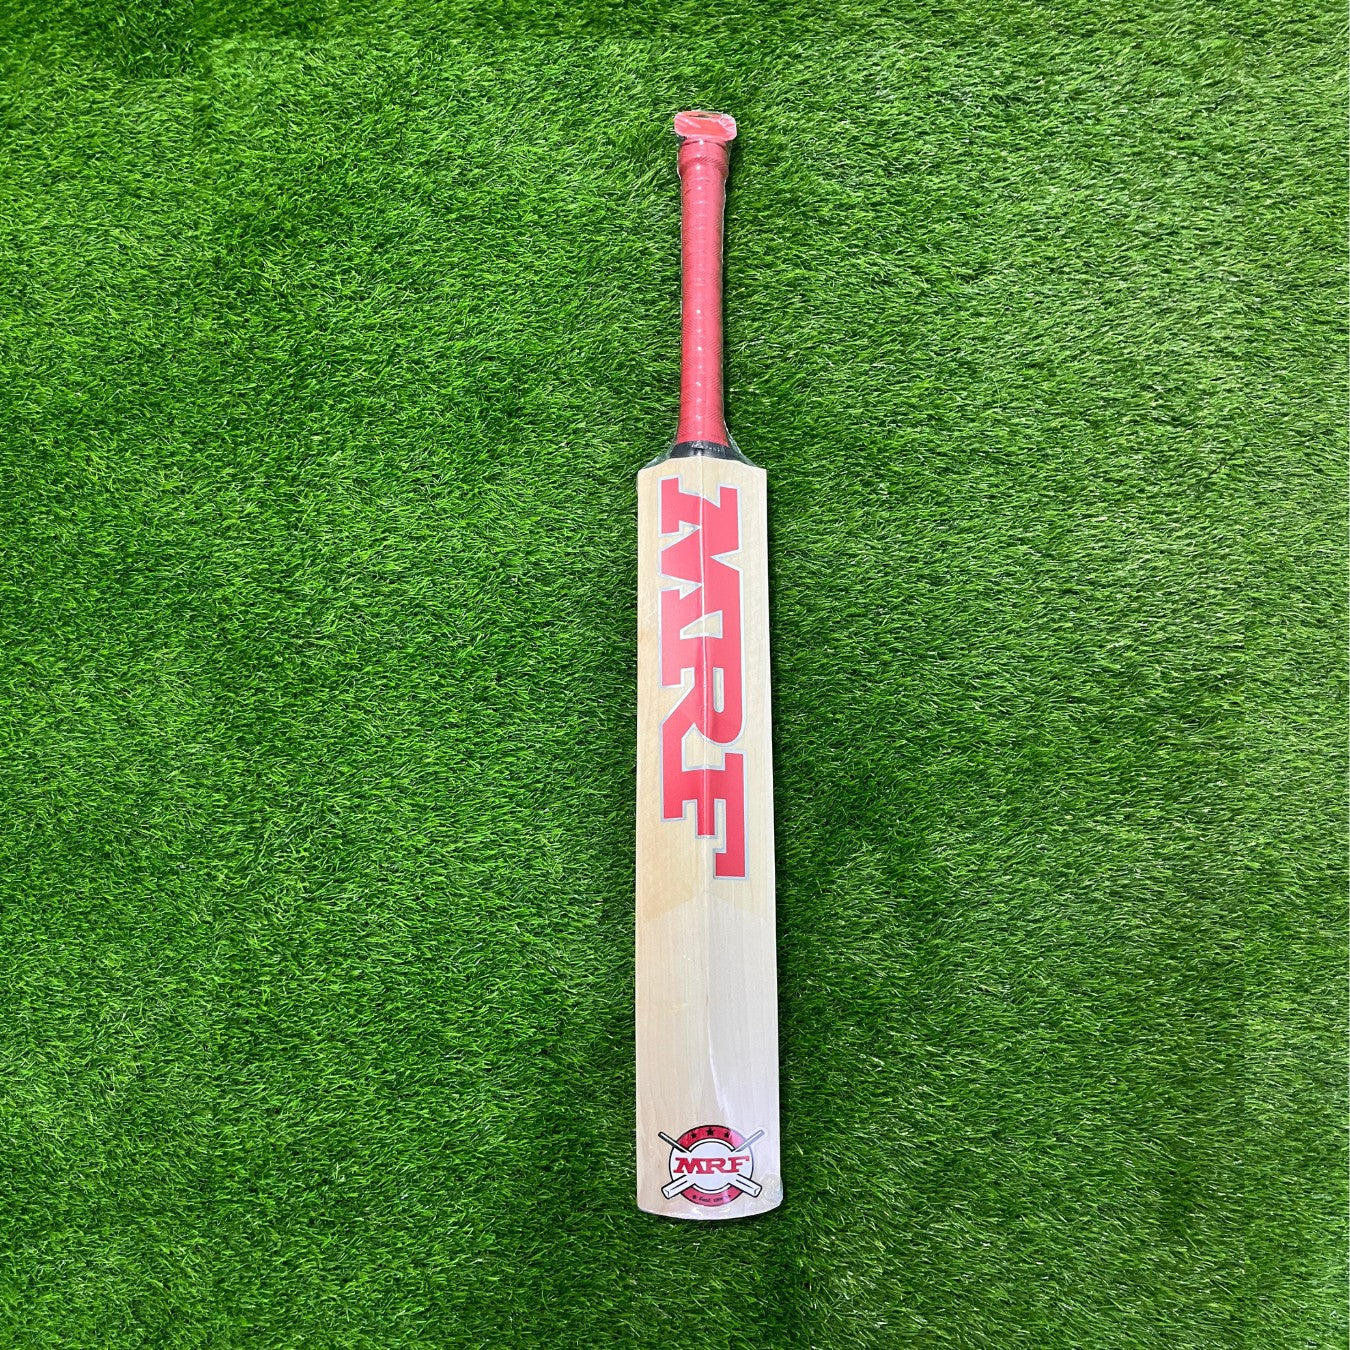 MRF Legend VK 18 1.0 English Willow Cricket Bat - Junior Size Harrow